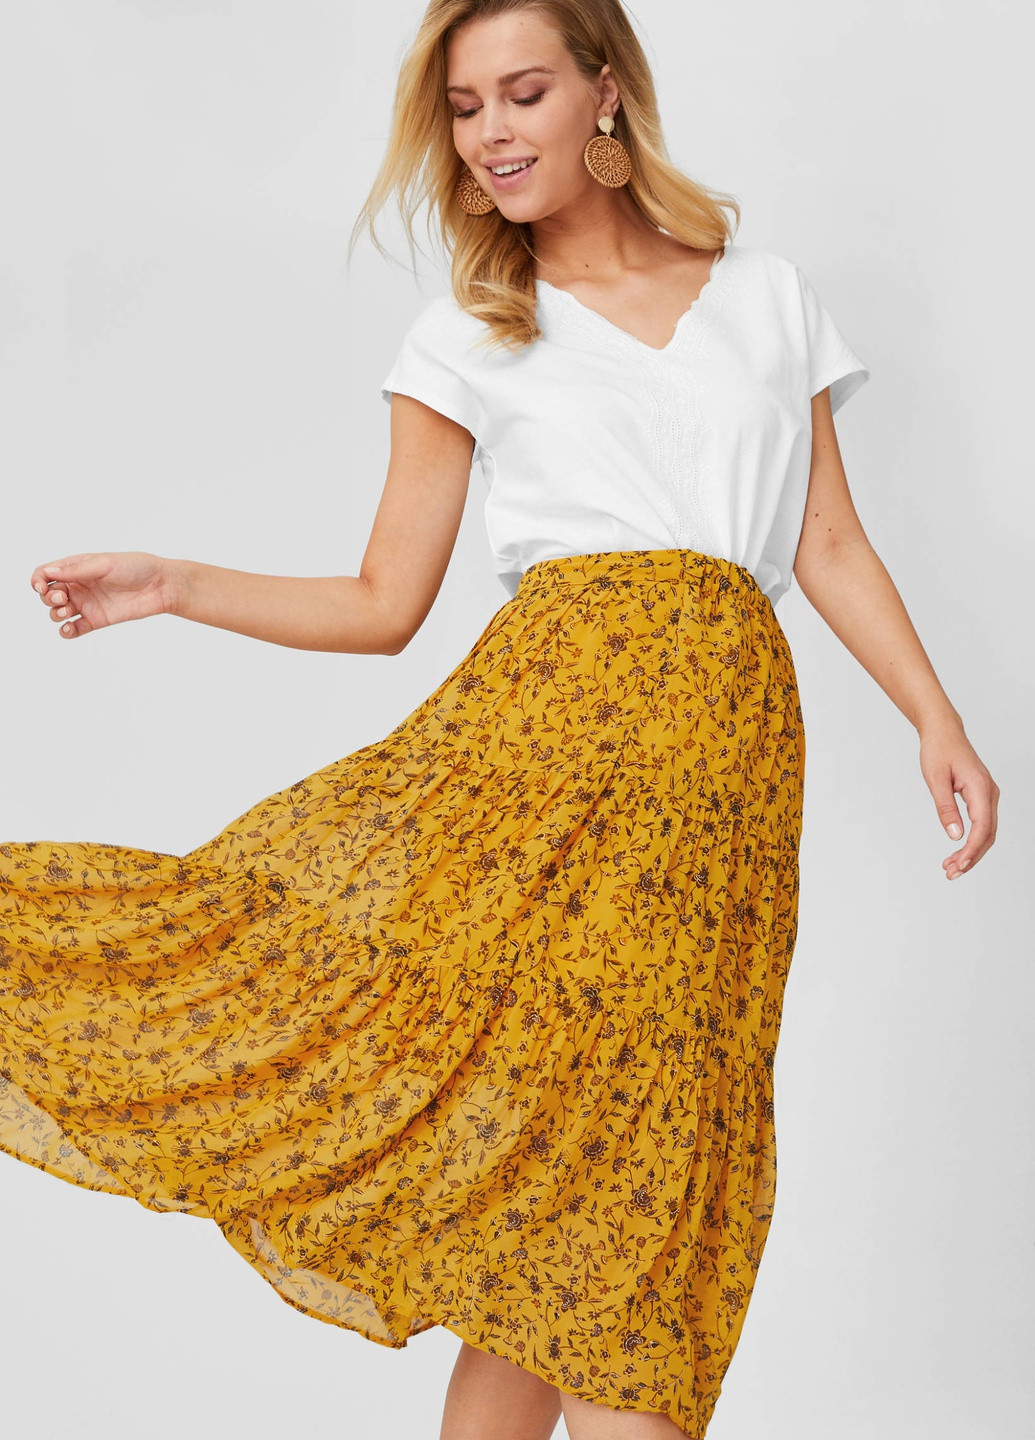 Желтая цветочной расцветки юбка C&A